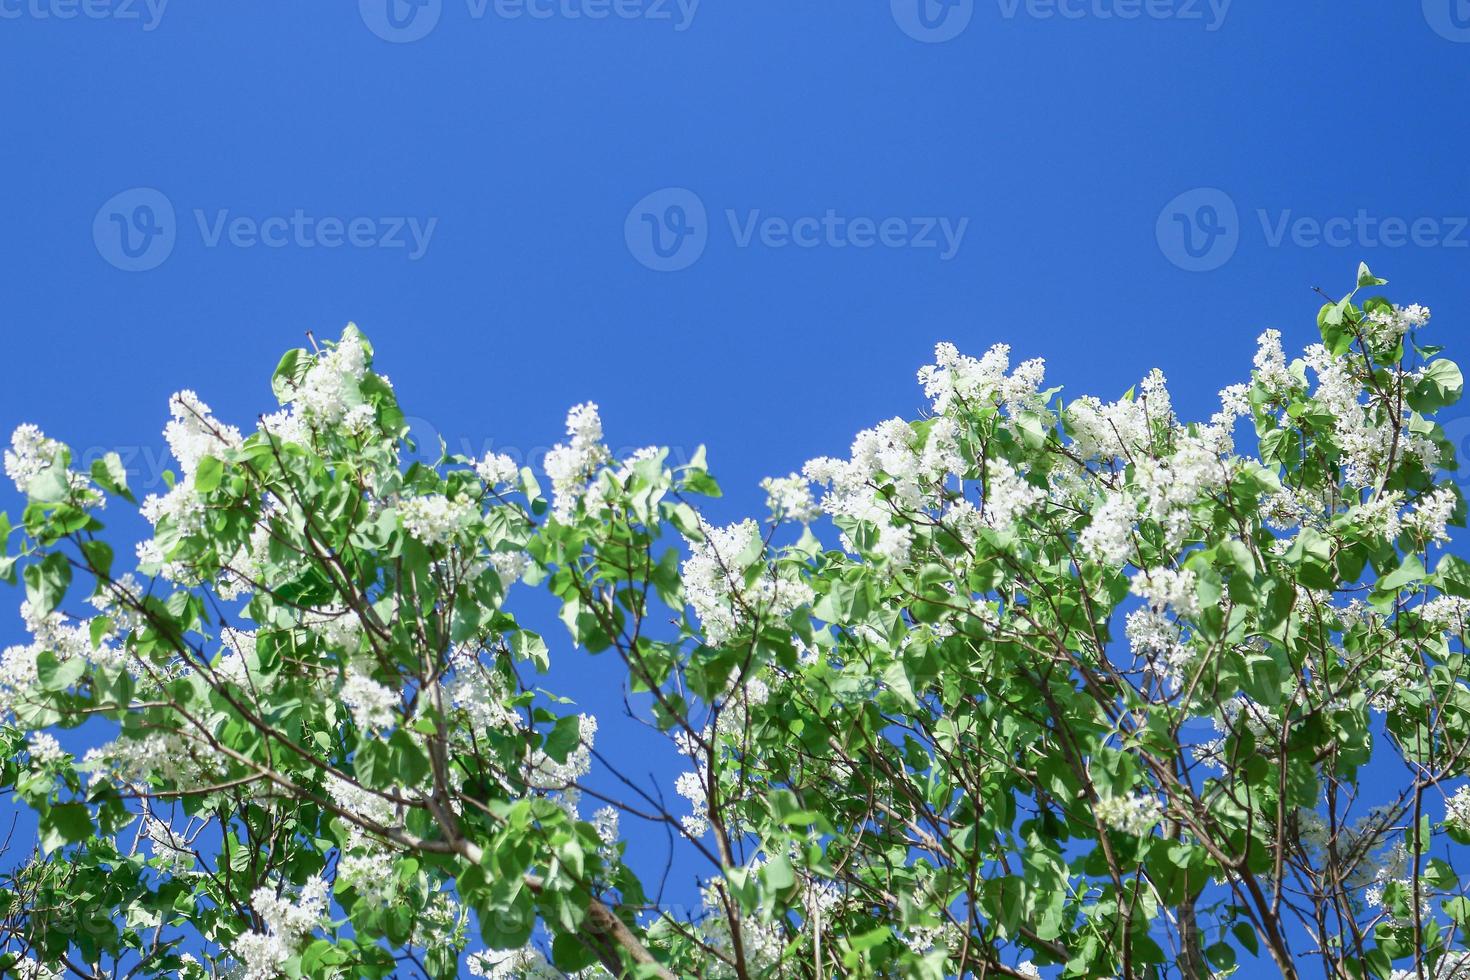 lilases florescendo brancos no fundo do céu azul em um dia ensolarado de primavera foto